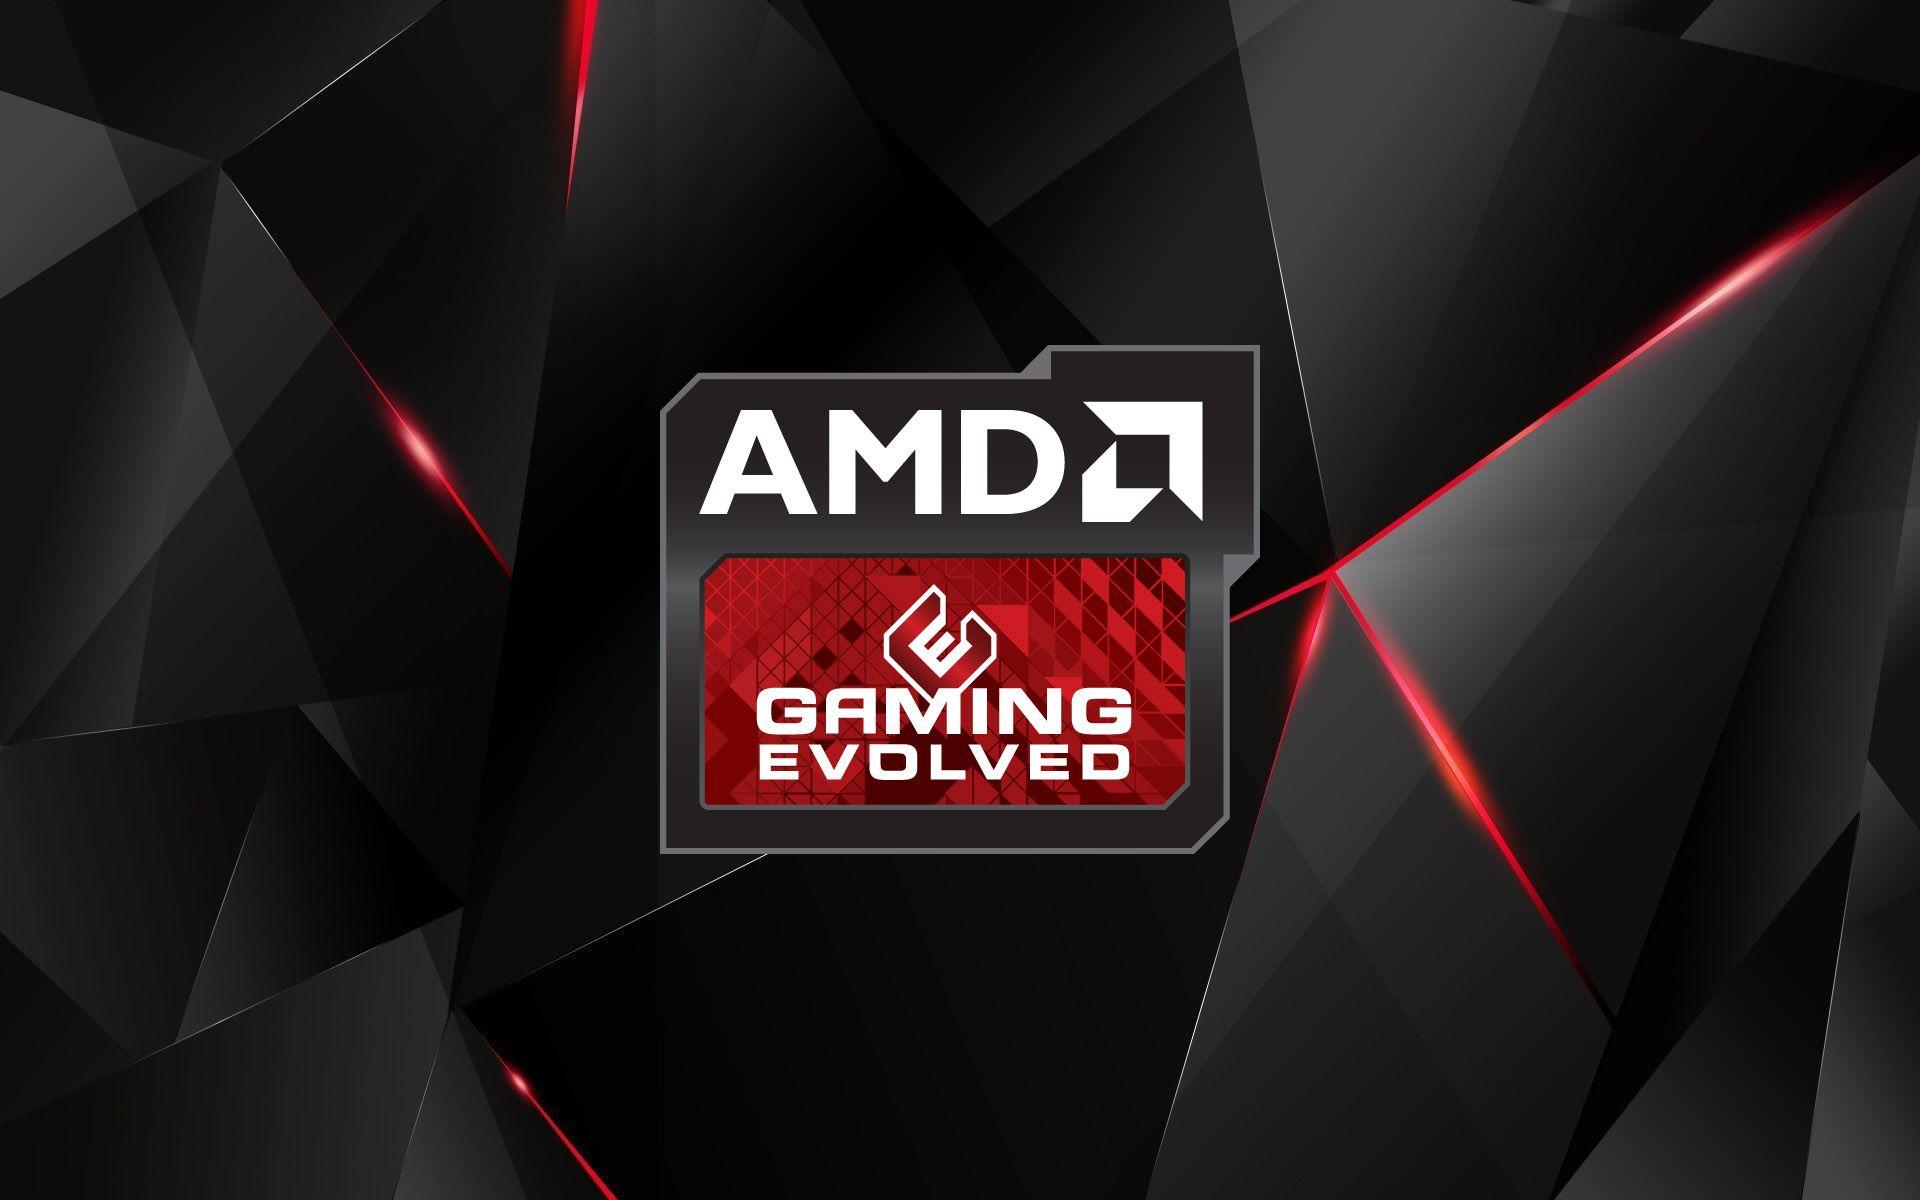 AMD 4K Logo - Amd Logo Image Gallery D0m1bxe412